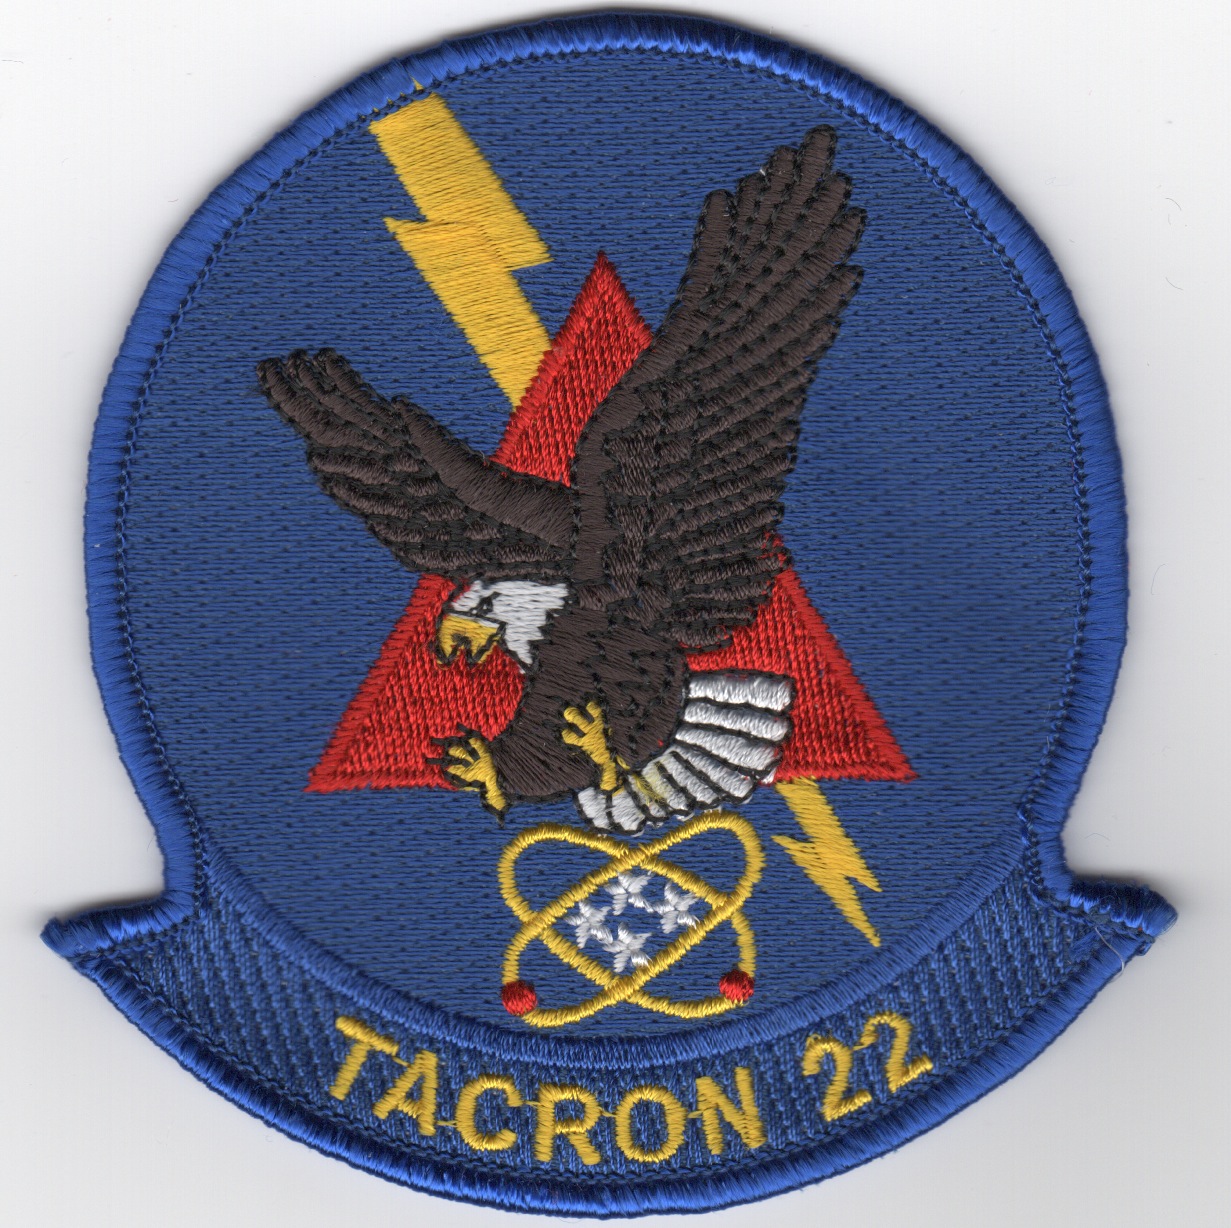 TACRON-22 Squadron Patch (Blue)